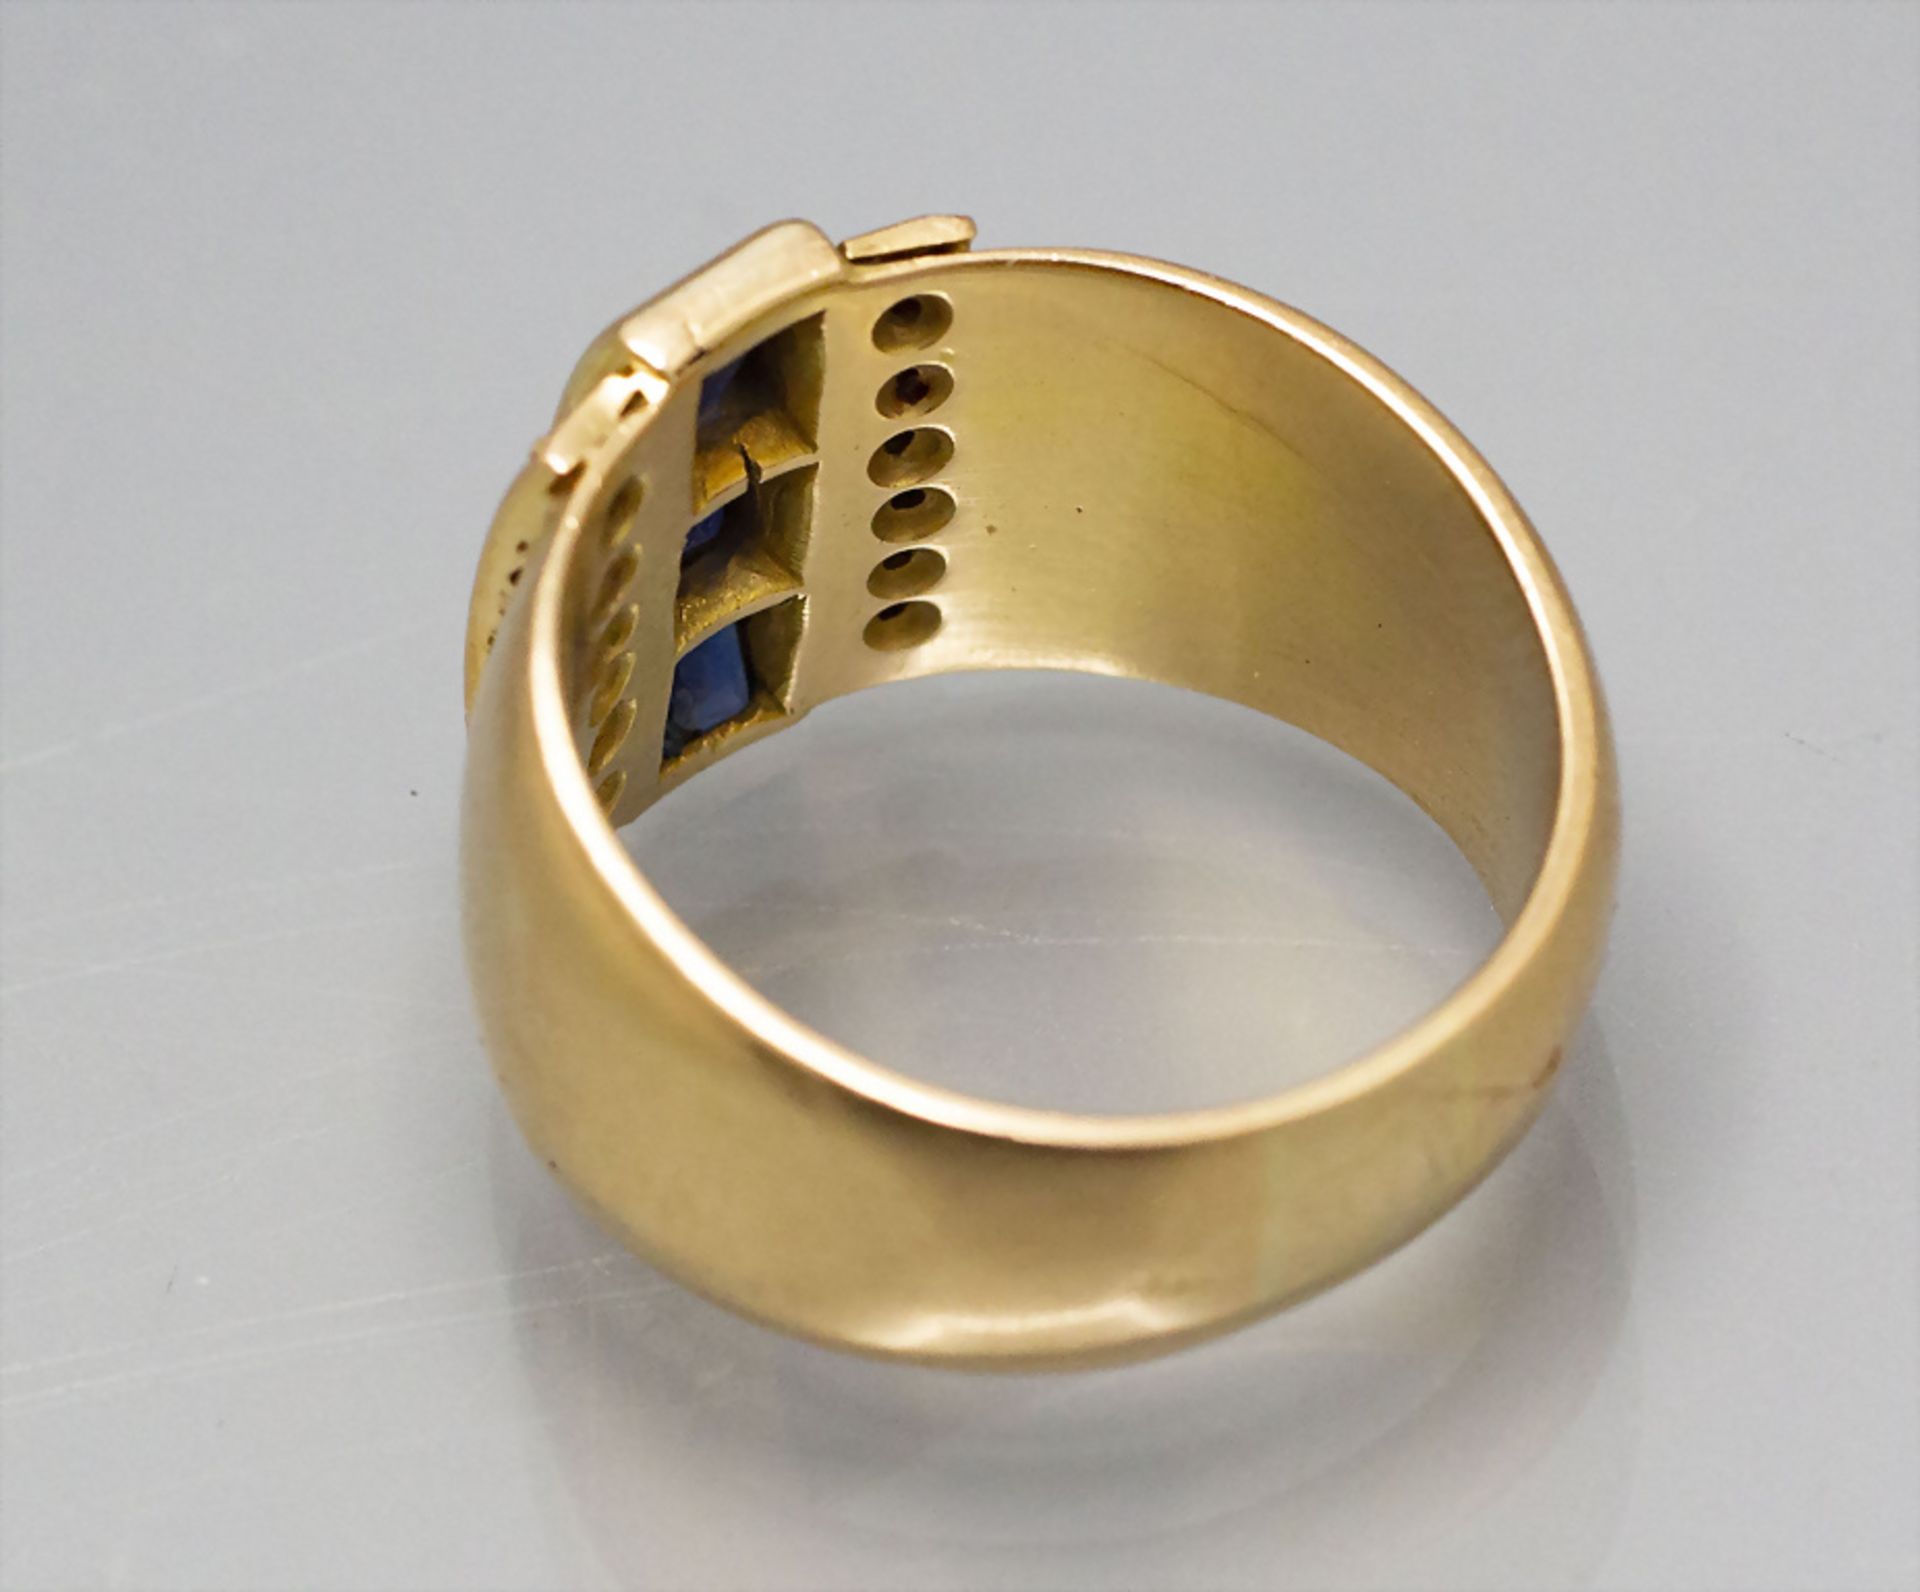 Damenring mit Saphiren und Brillanten / A ladies 18 ct gold ring with diamonds and sapphires - Bild 2 aus 2